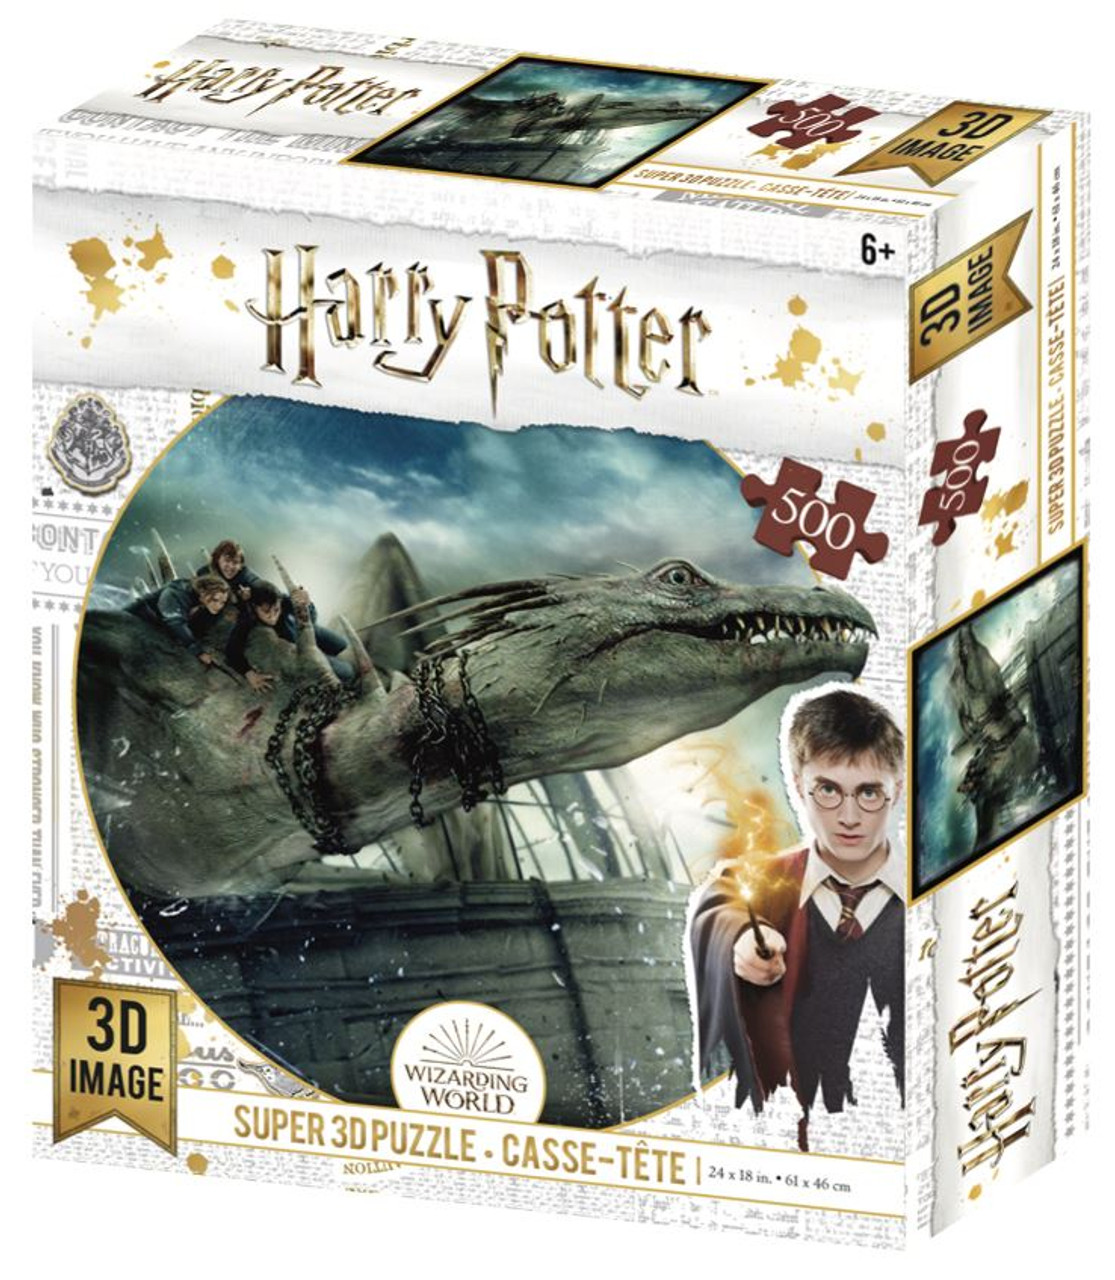 Puzzle 1000 pièces mini : Harry Potter - Educa - Rue des Puzzles